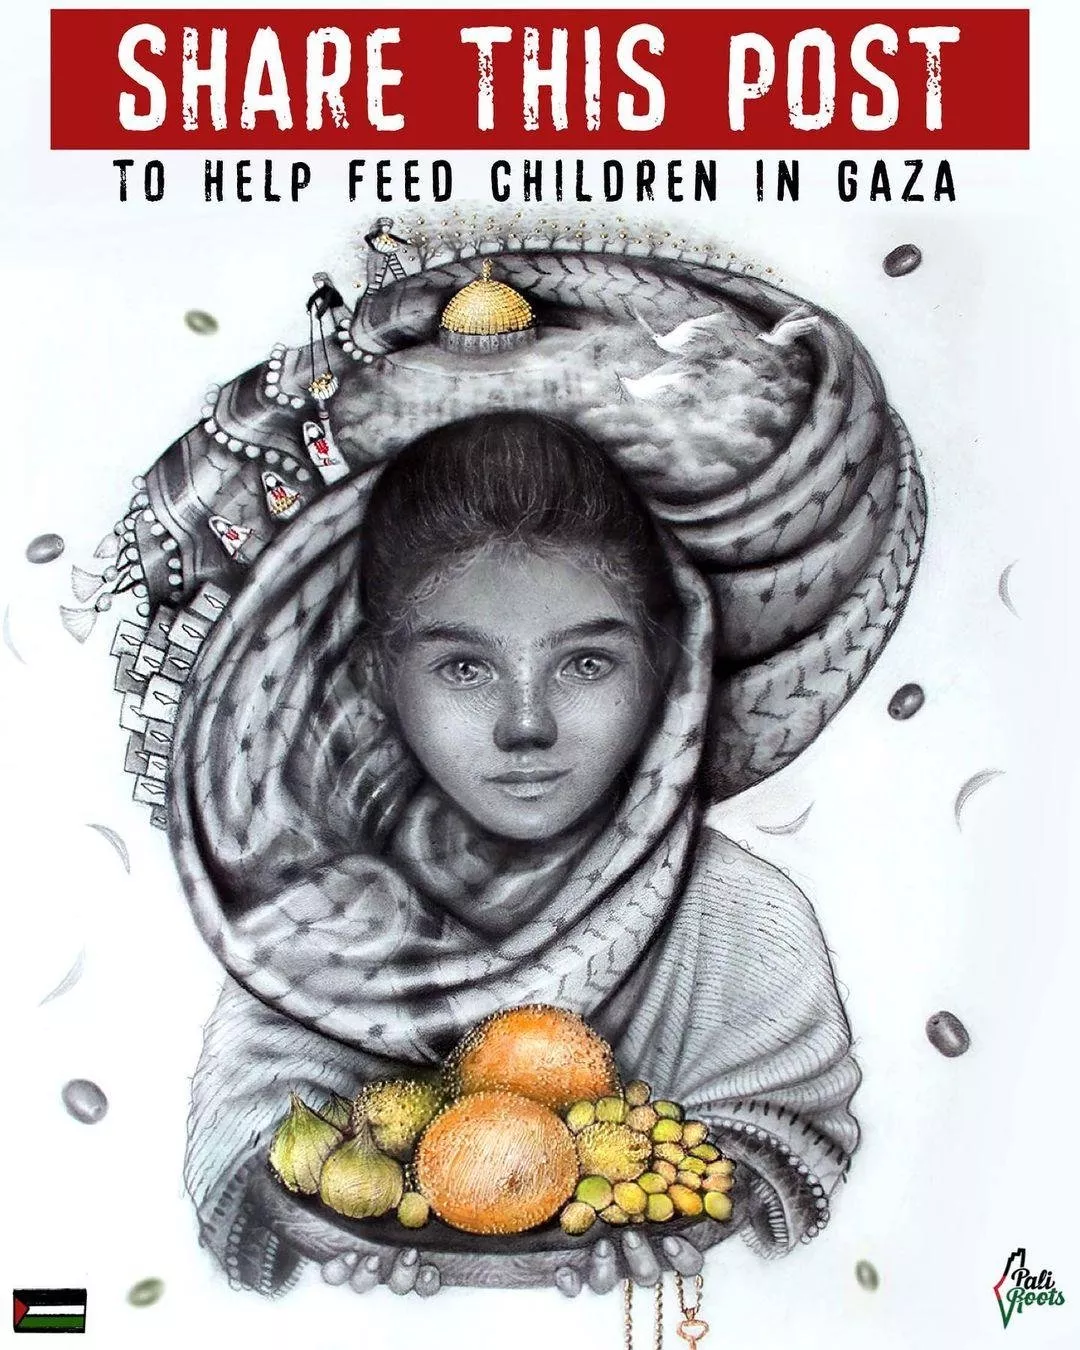 كيف يمكنكِ مساعدة ومساندة شعب فلسطين وأطفالها؟